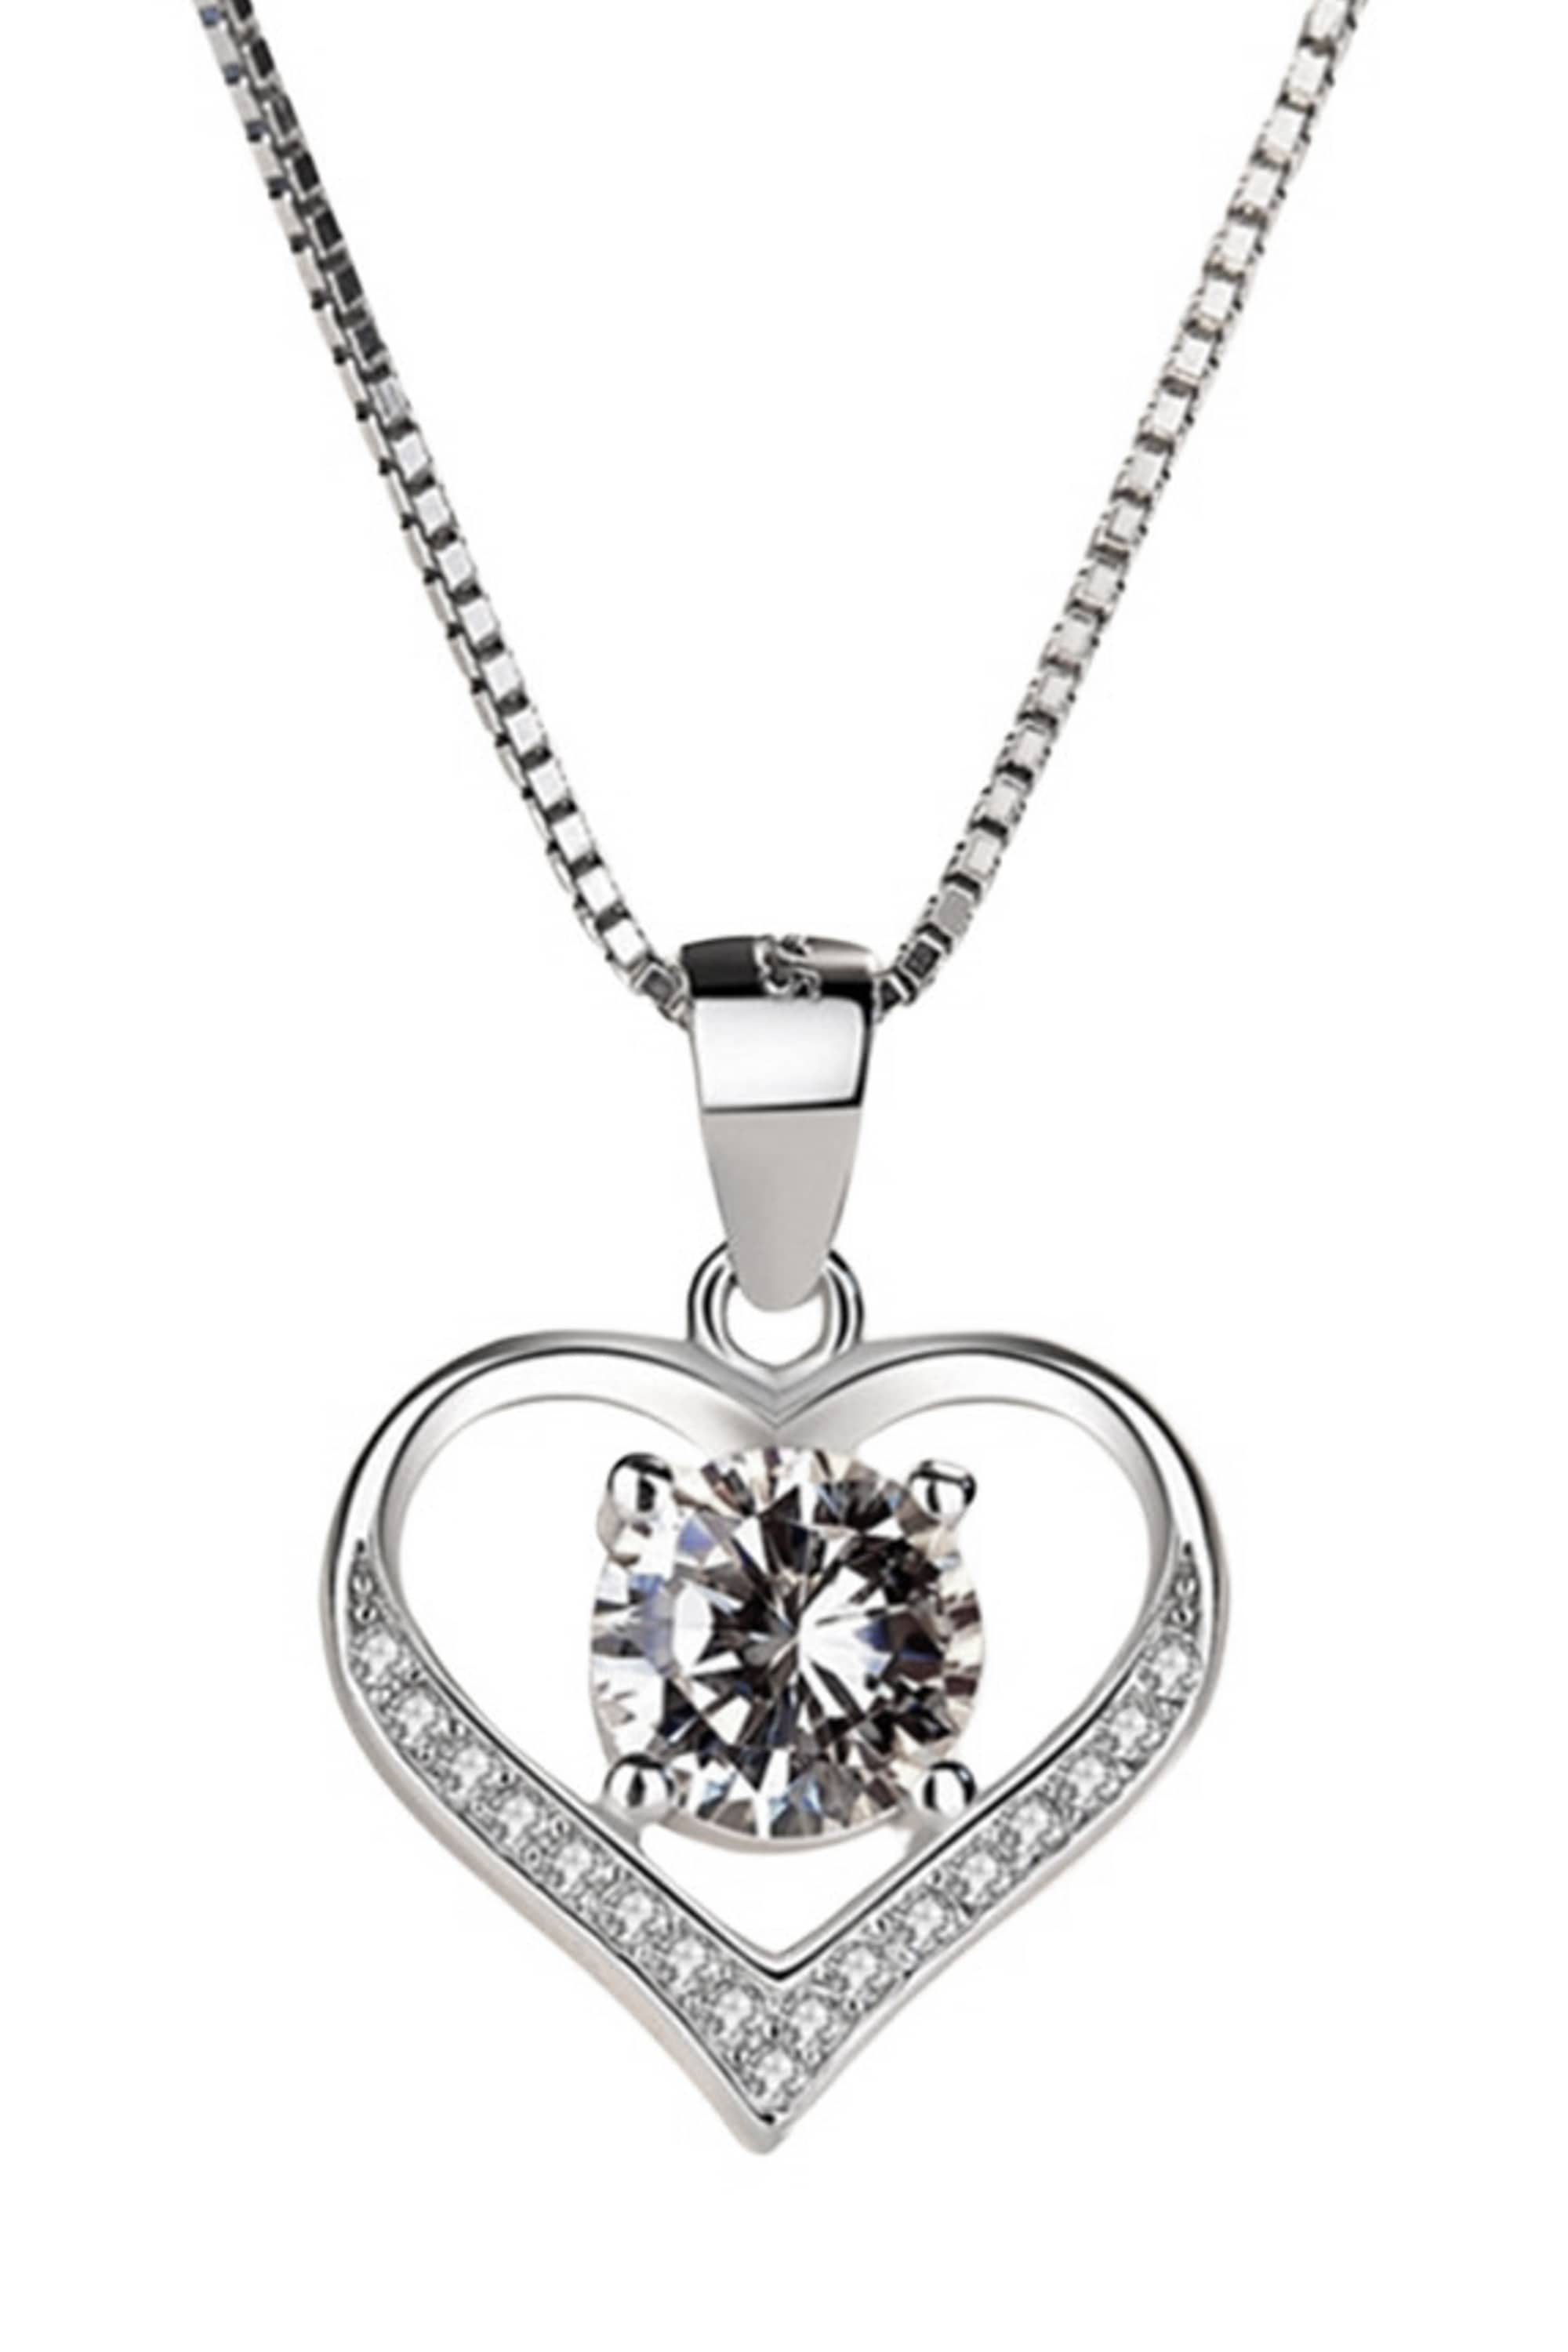 COLLEZIONE ALESSANDRO Silberkette "Heart", aus 925 Sterling Silber